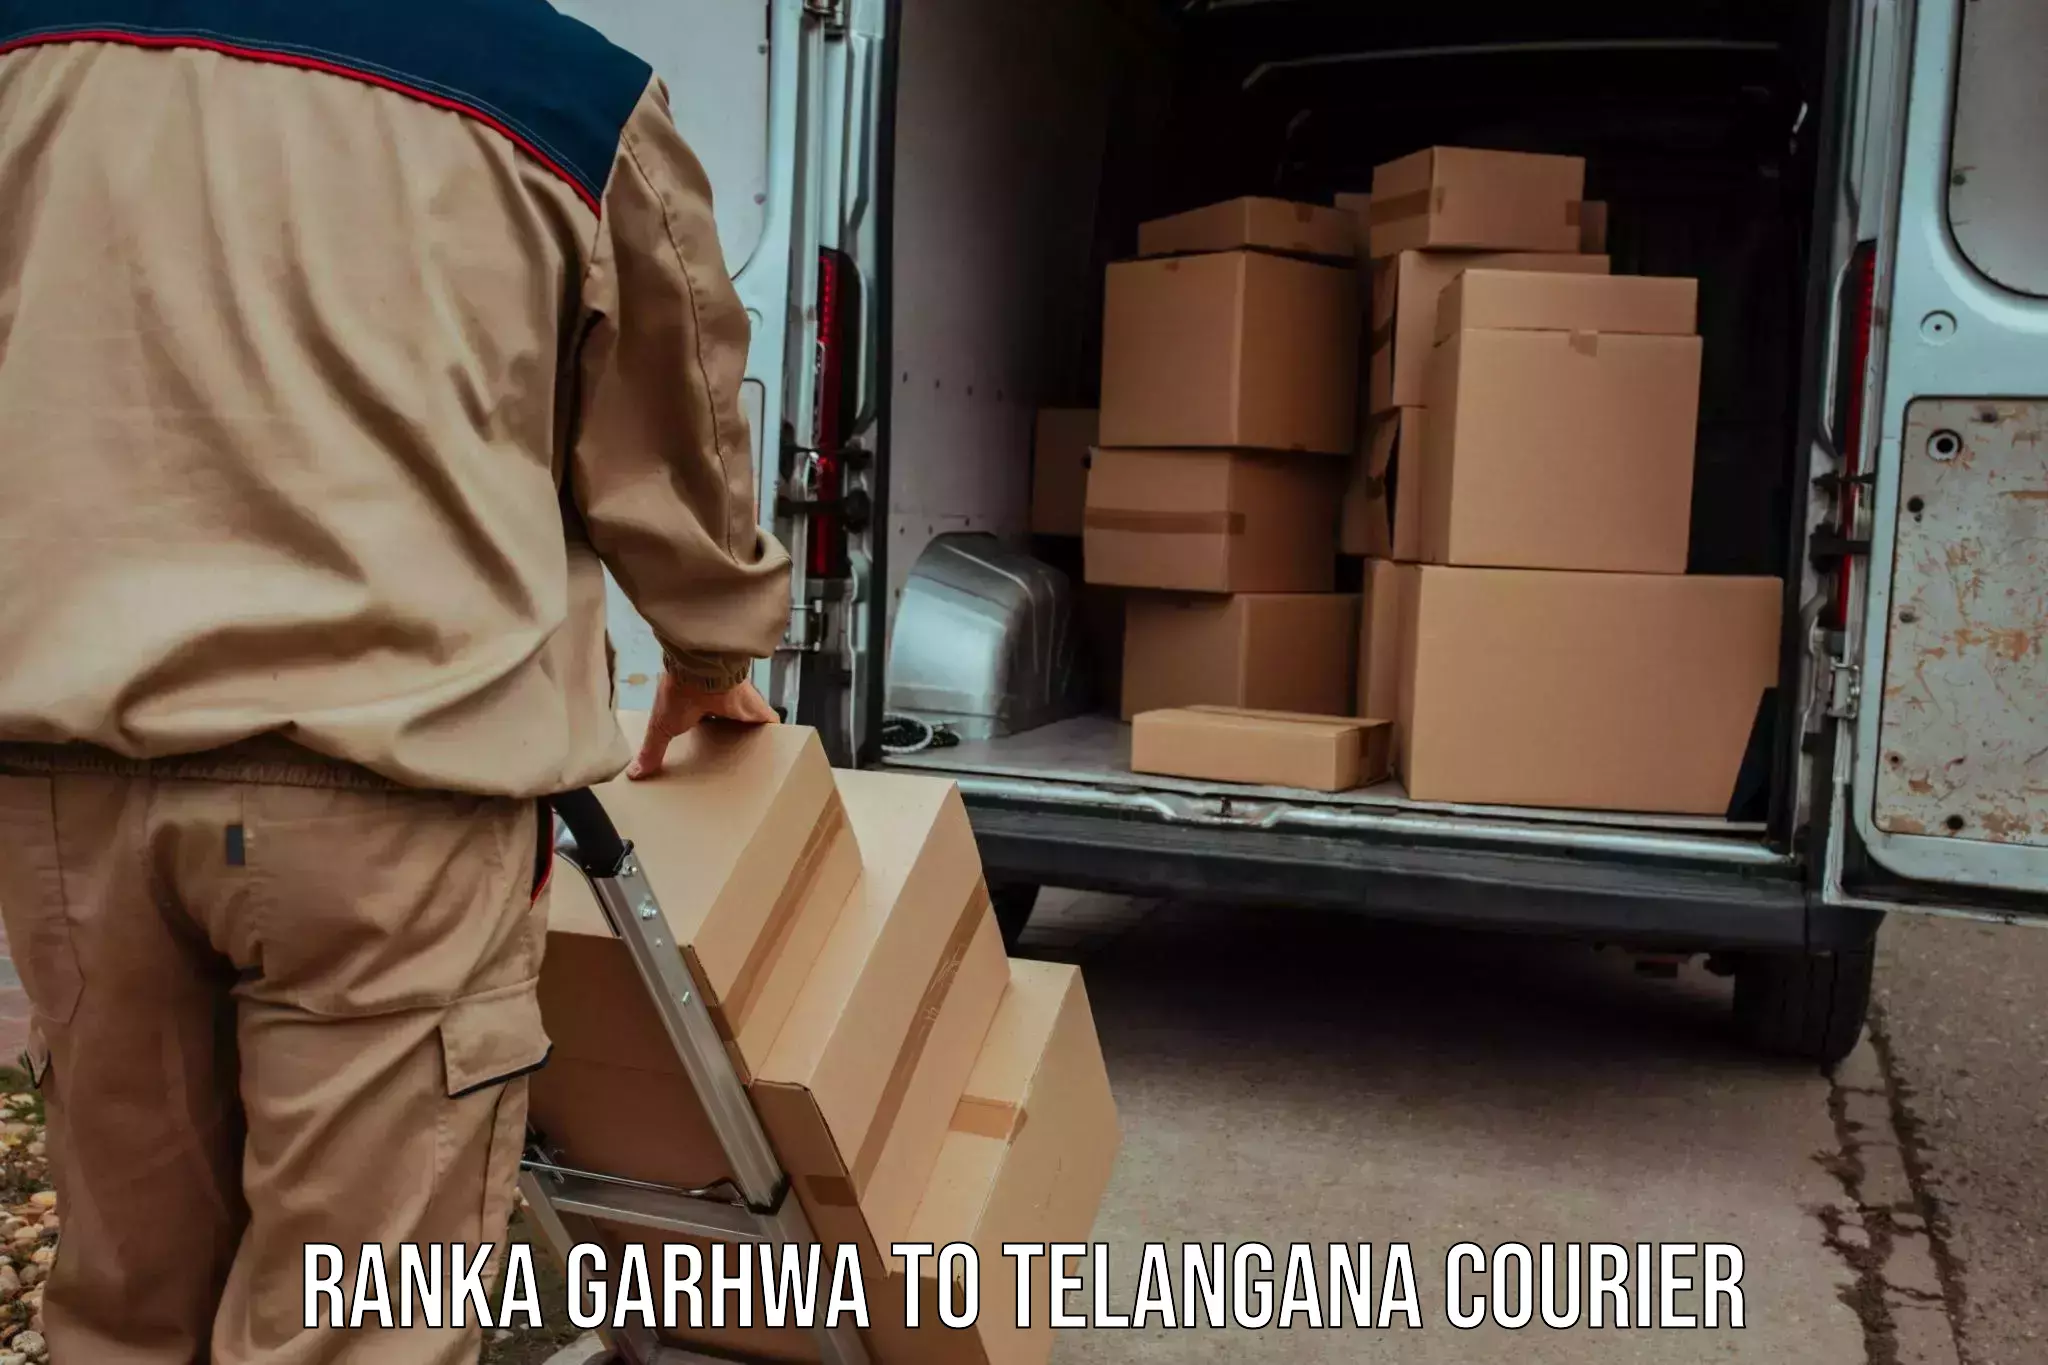 High-speed logistics services Ranka Garhwa to Bhainsa